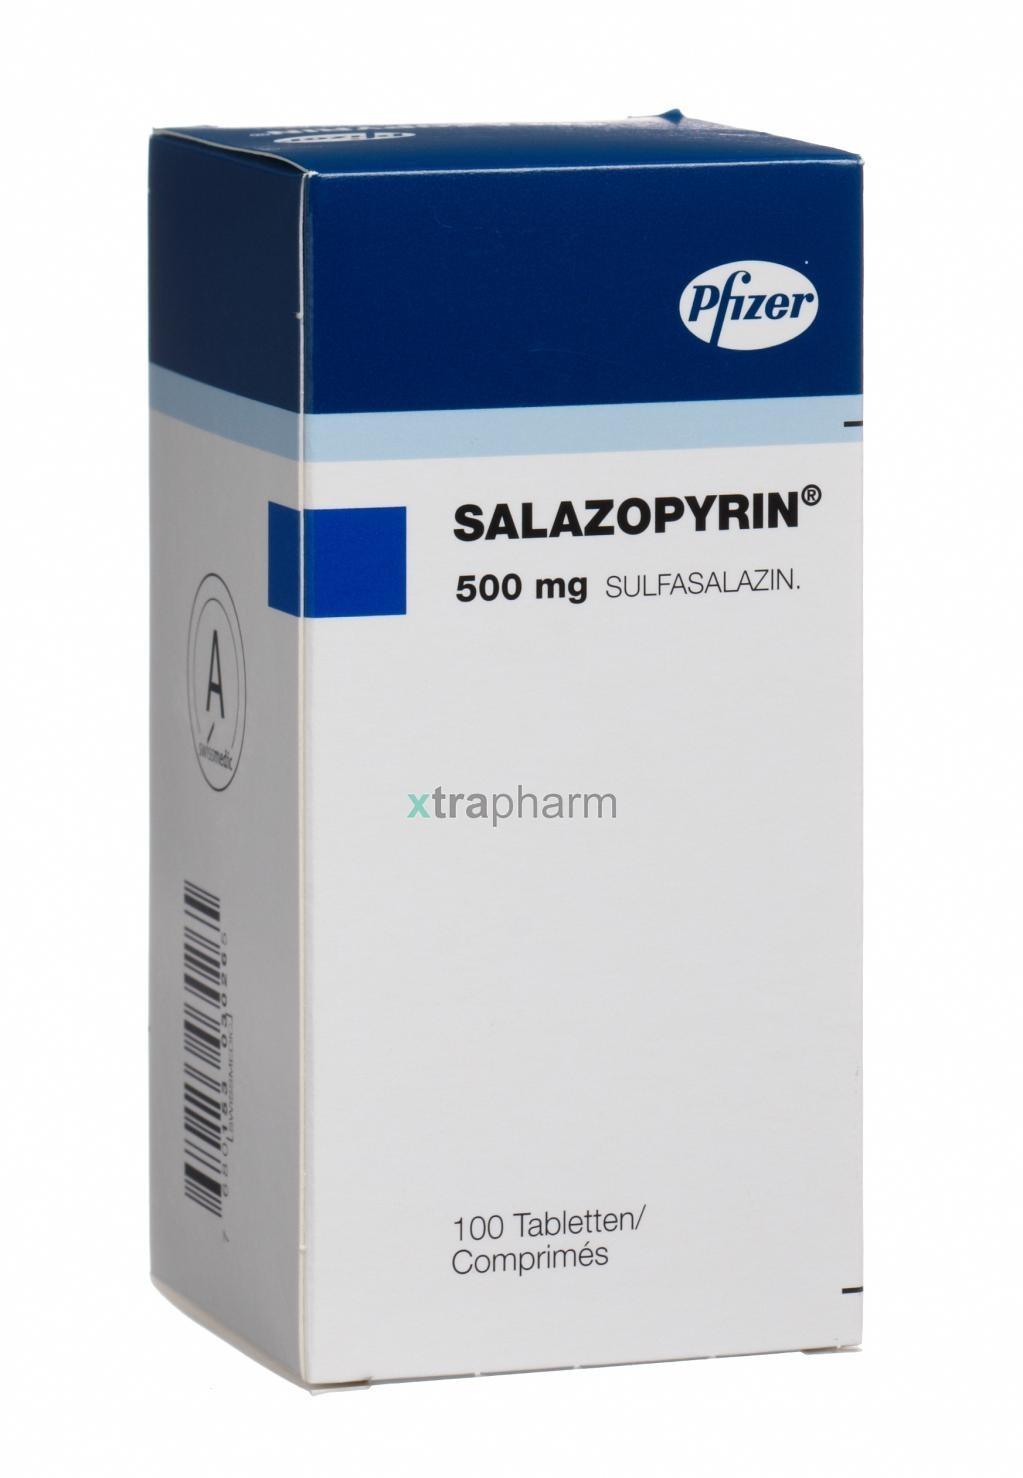 Salazopyrine